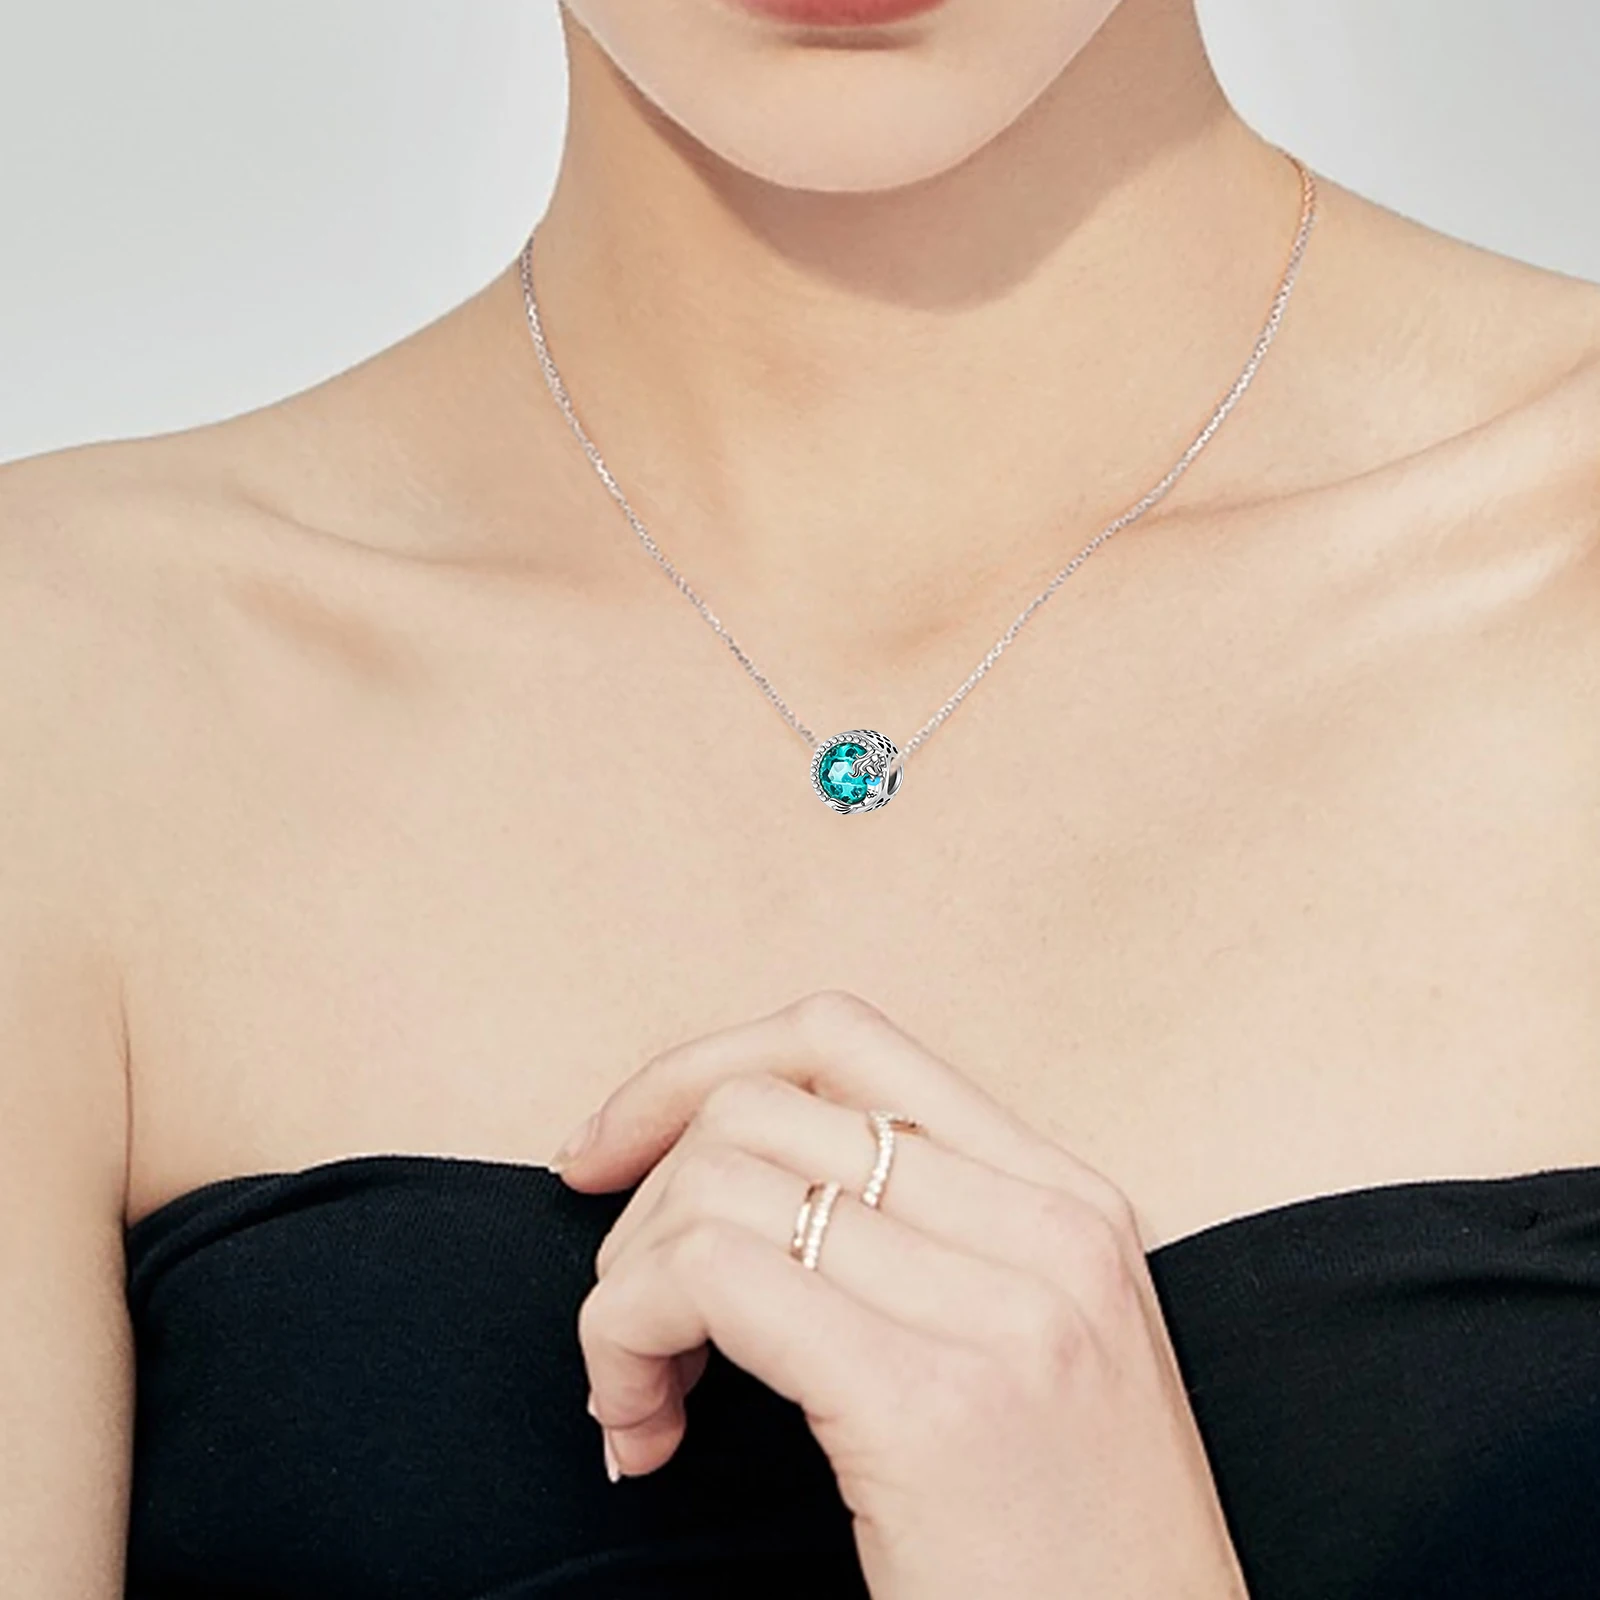 925 silver green Morská víla Opal butik fashion fit pandora originálny náramok kúzlo korálky náhrdelník Diy ženské šperky - 3